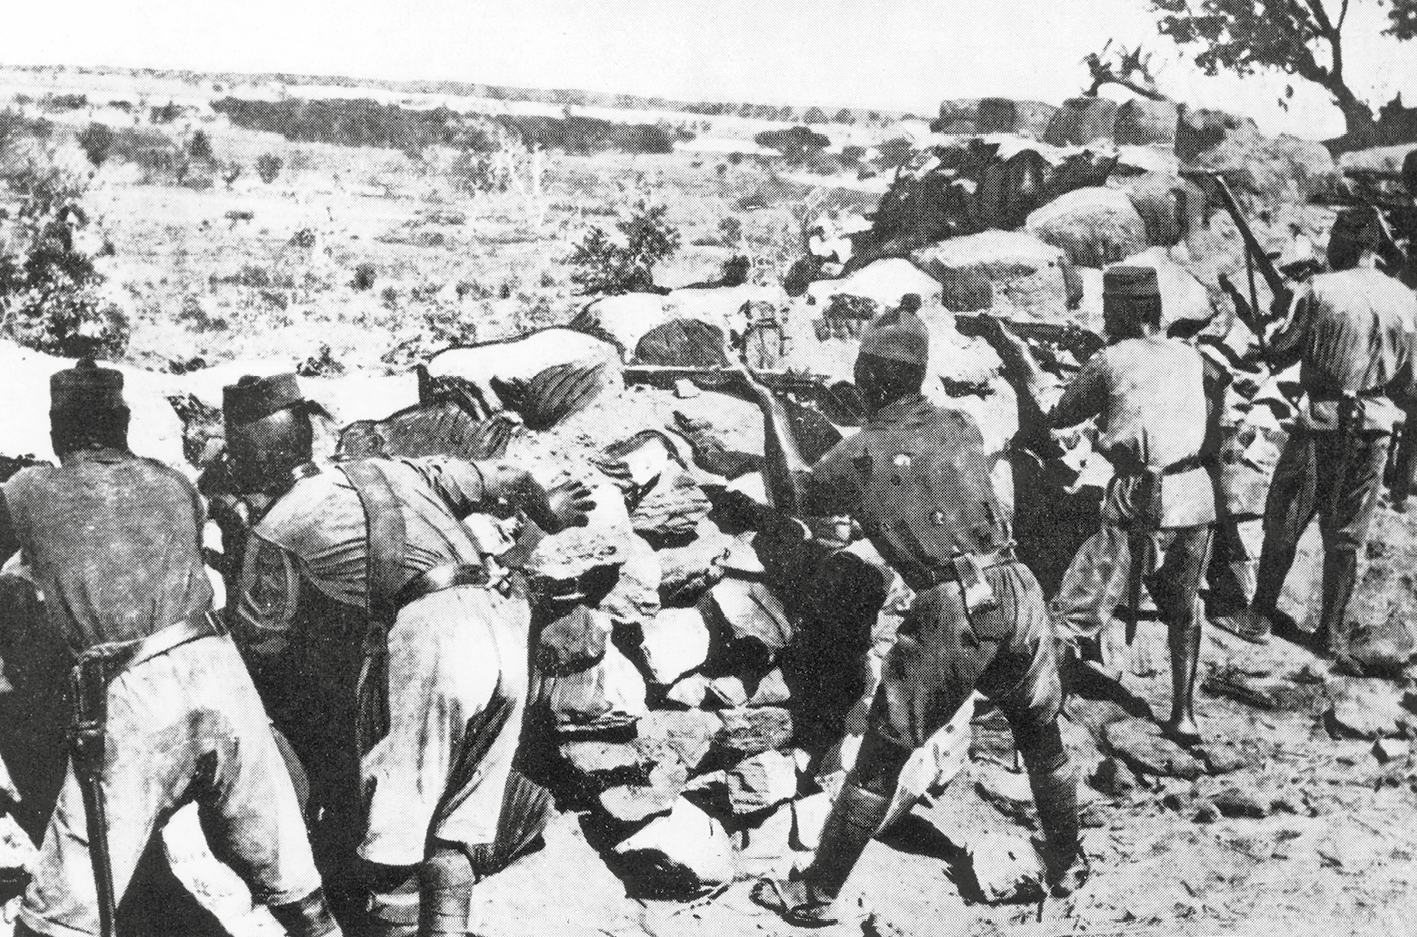 Fotografia em preto e branco. Soldados atrás de uma trincheira feita de pedras. Empunham armas de cano longo sobre a trincheira.